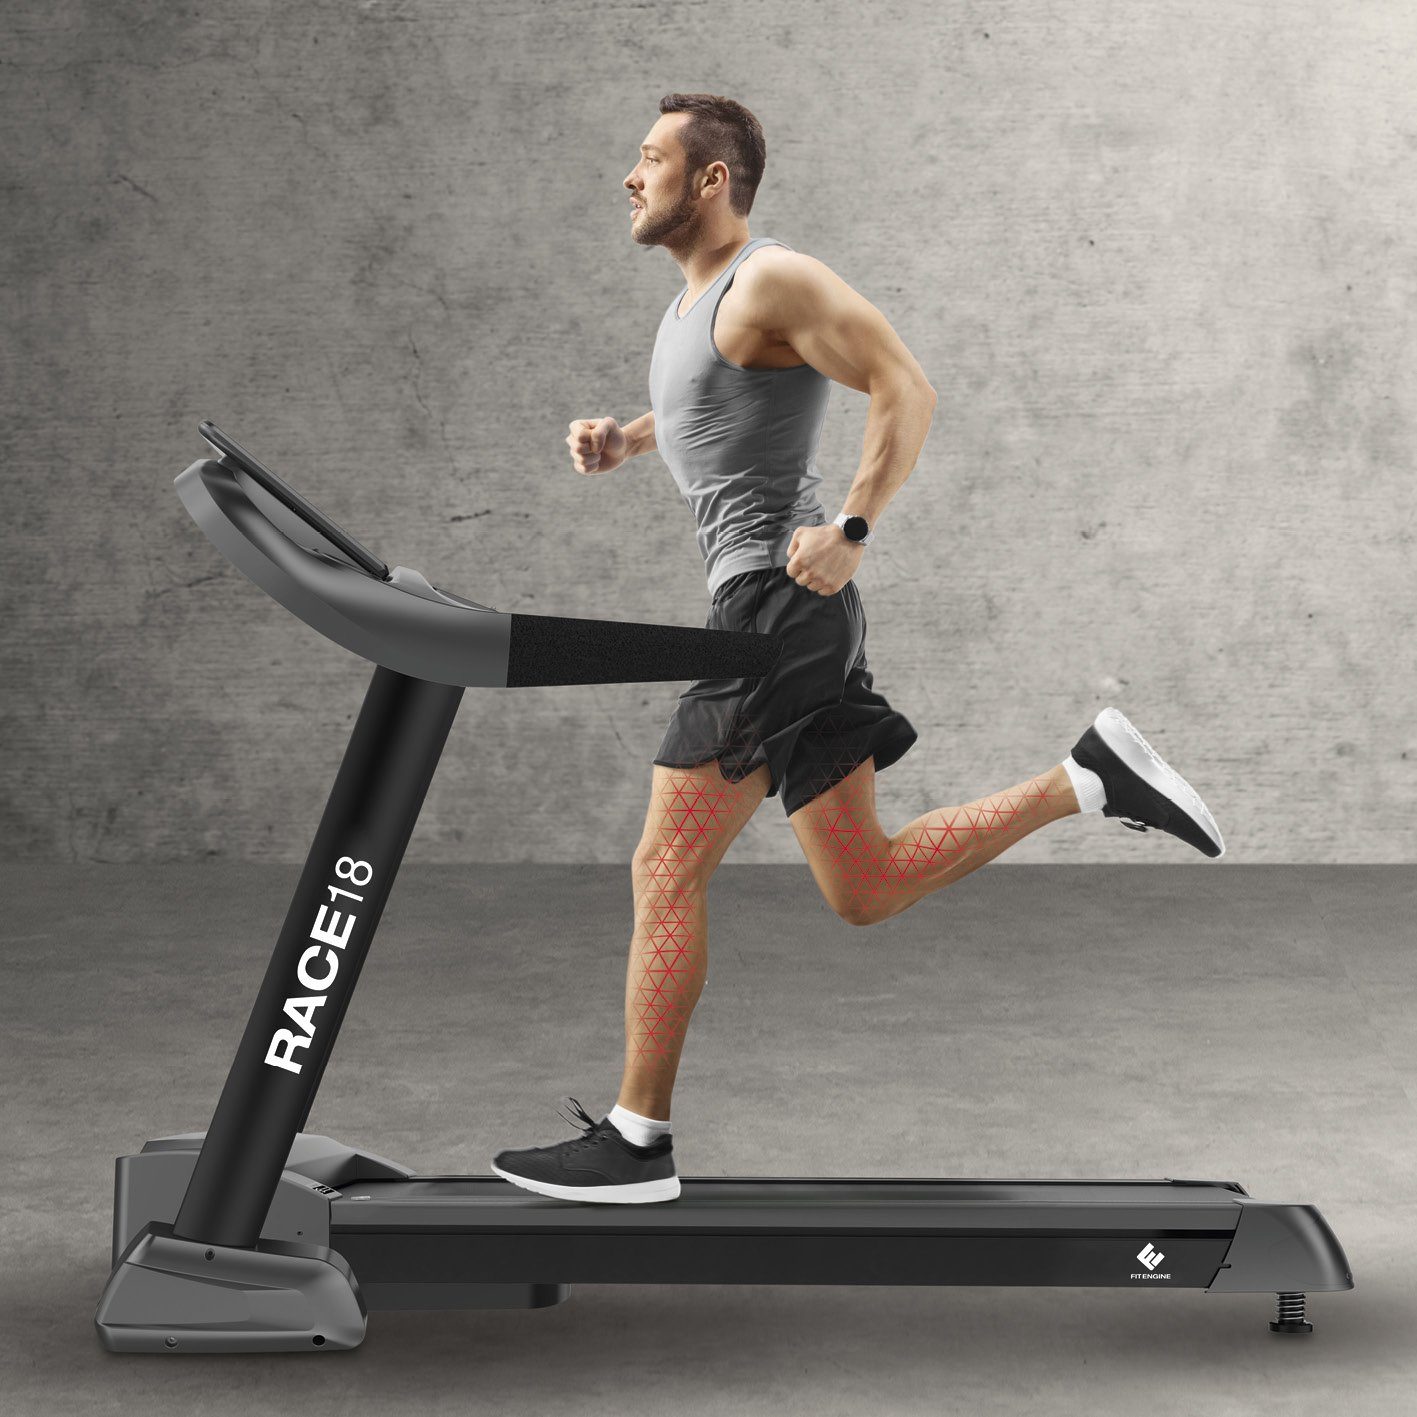 FitEngine Laufband RACE18 - Fitnessgerät - Heimfitness - bis 150 kg  belastbar, extra breite Lauffläche - bis 18 km/h & 15% Steigung